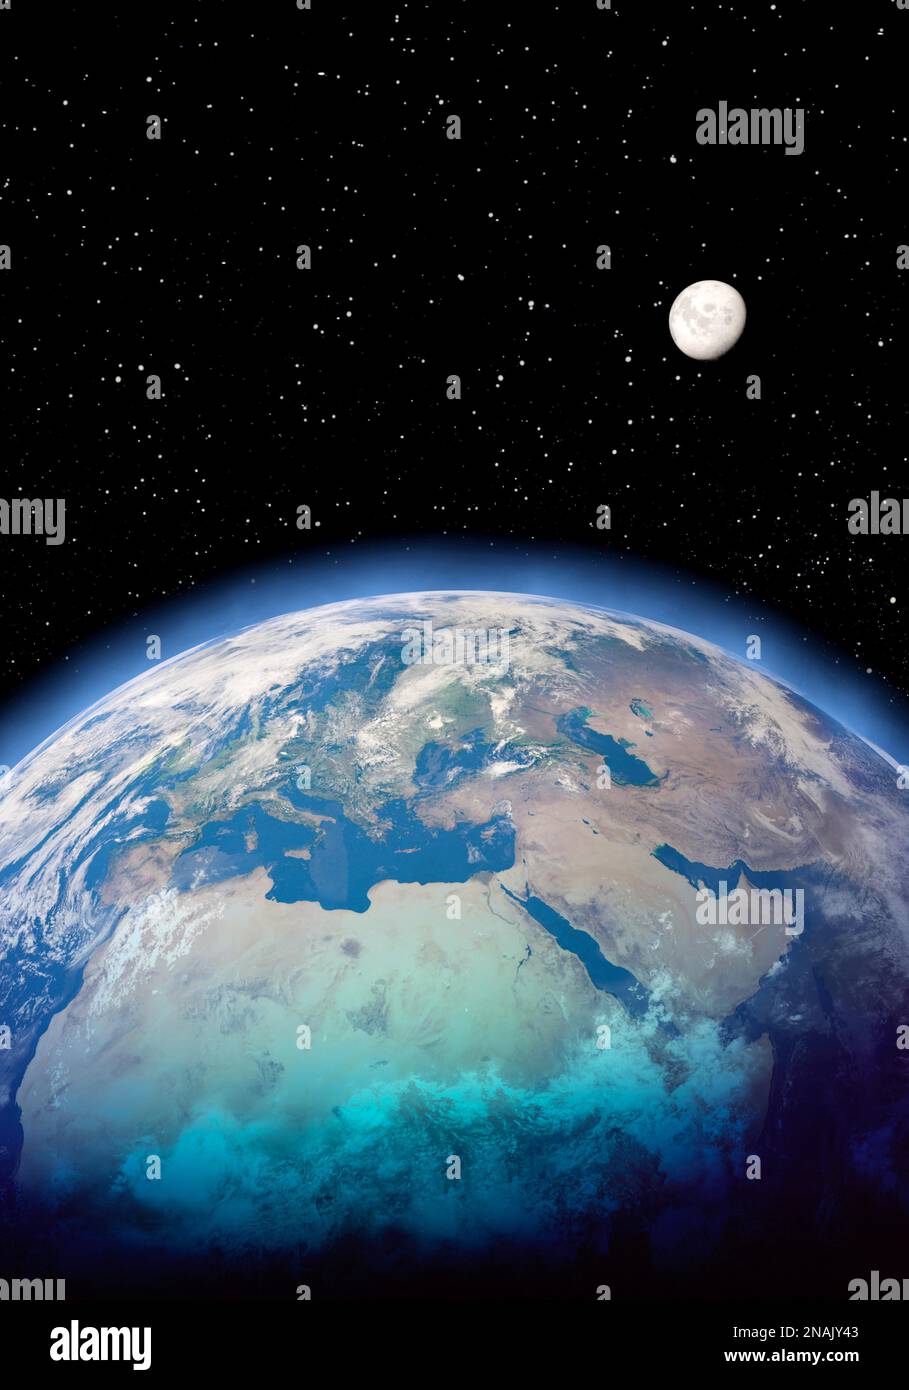 Erde, Mond und Weltraum im Porträtformat Stockfoto